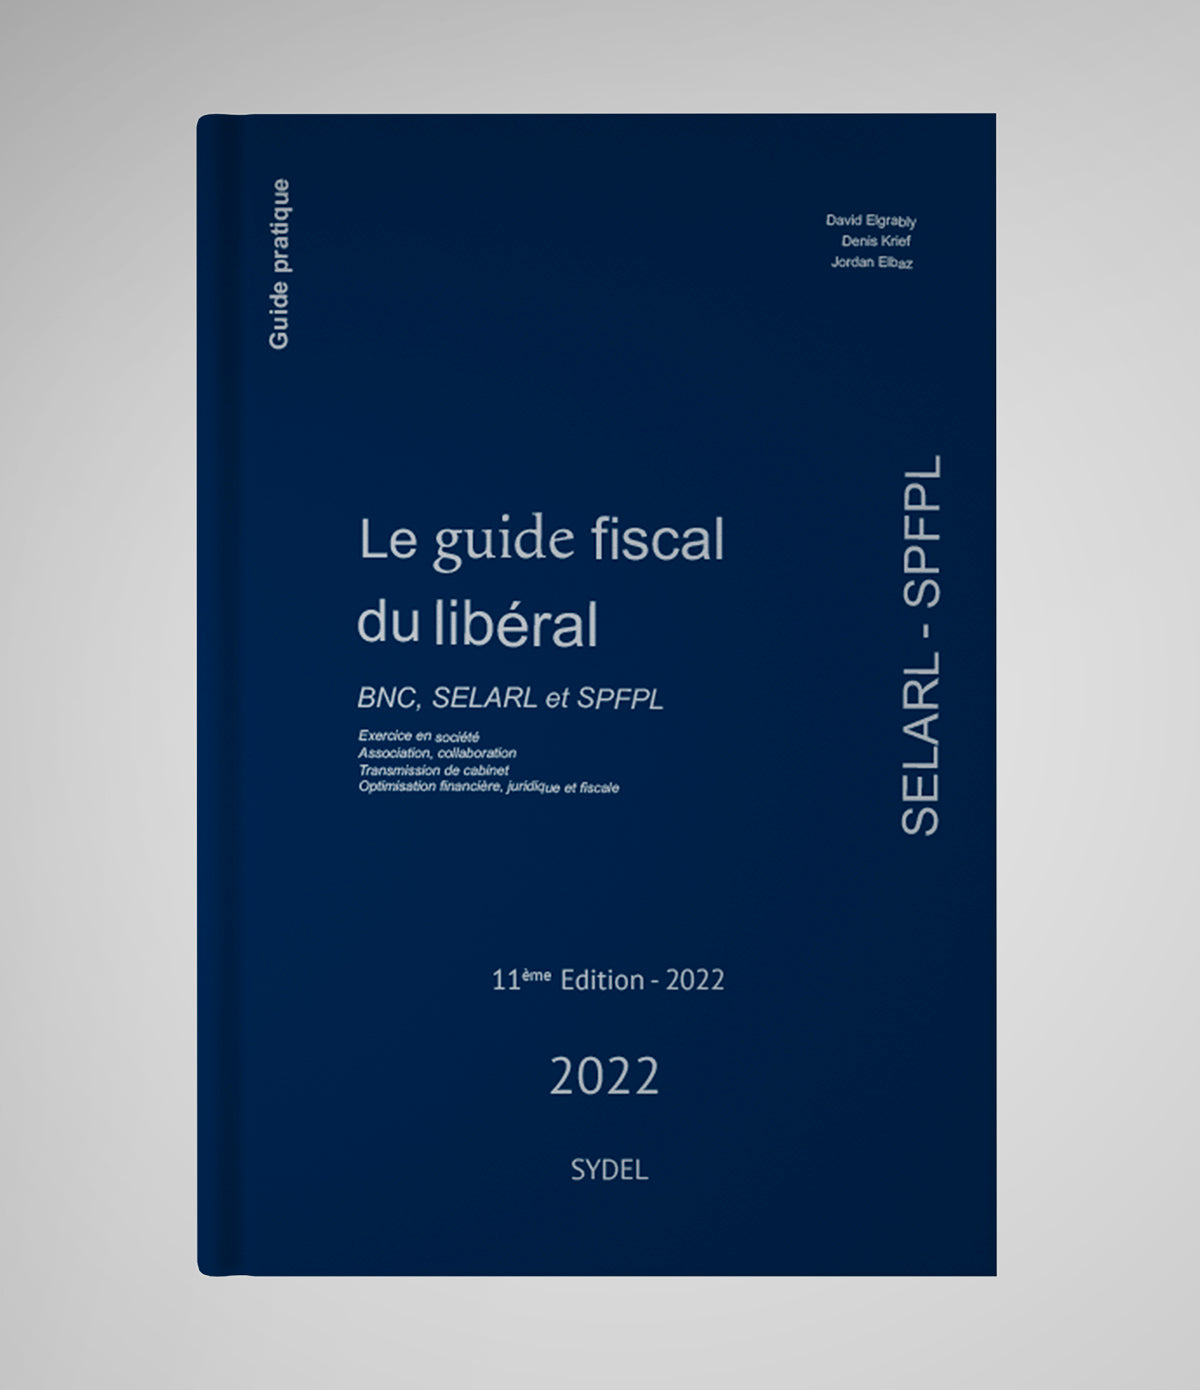 Le guide fiscal du libéral 2022